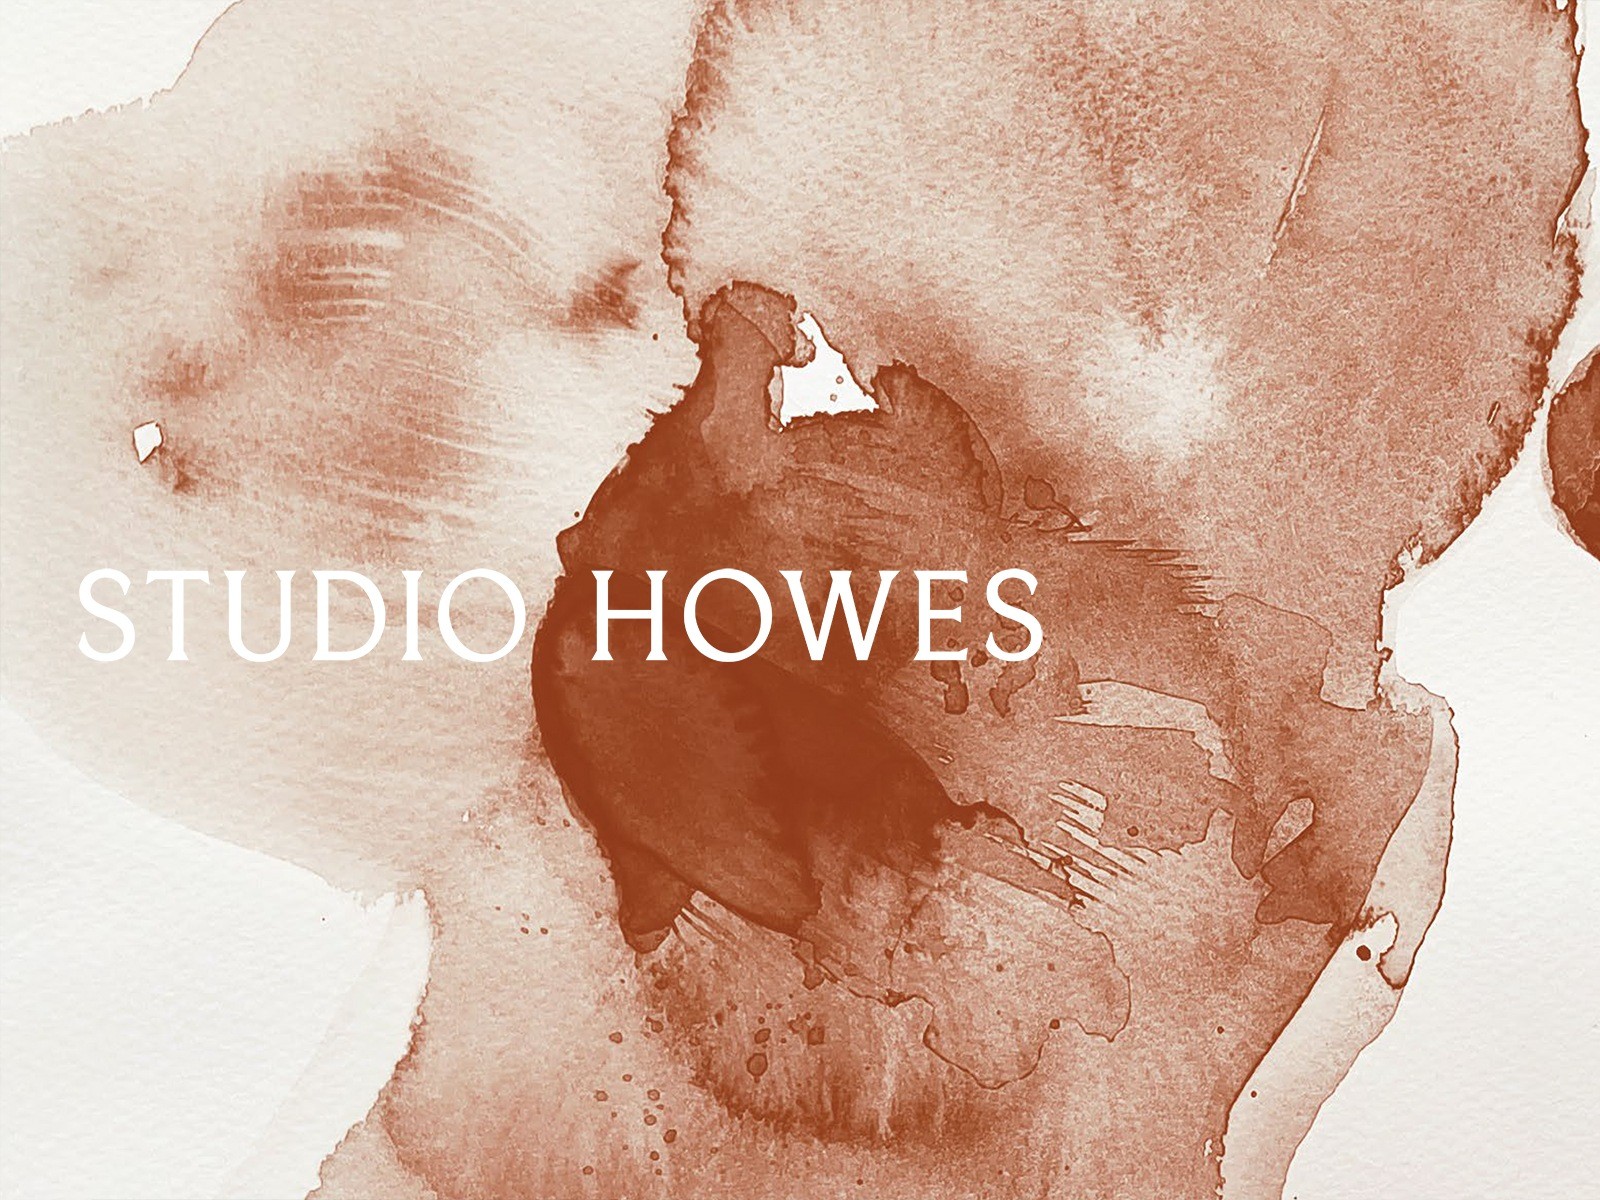 Studio Howes